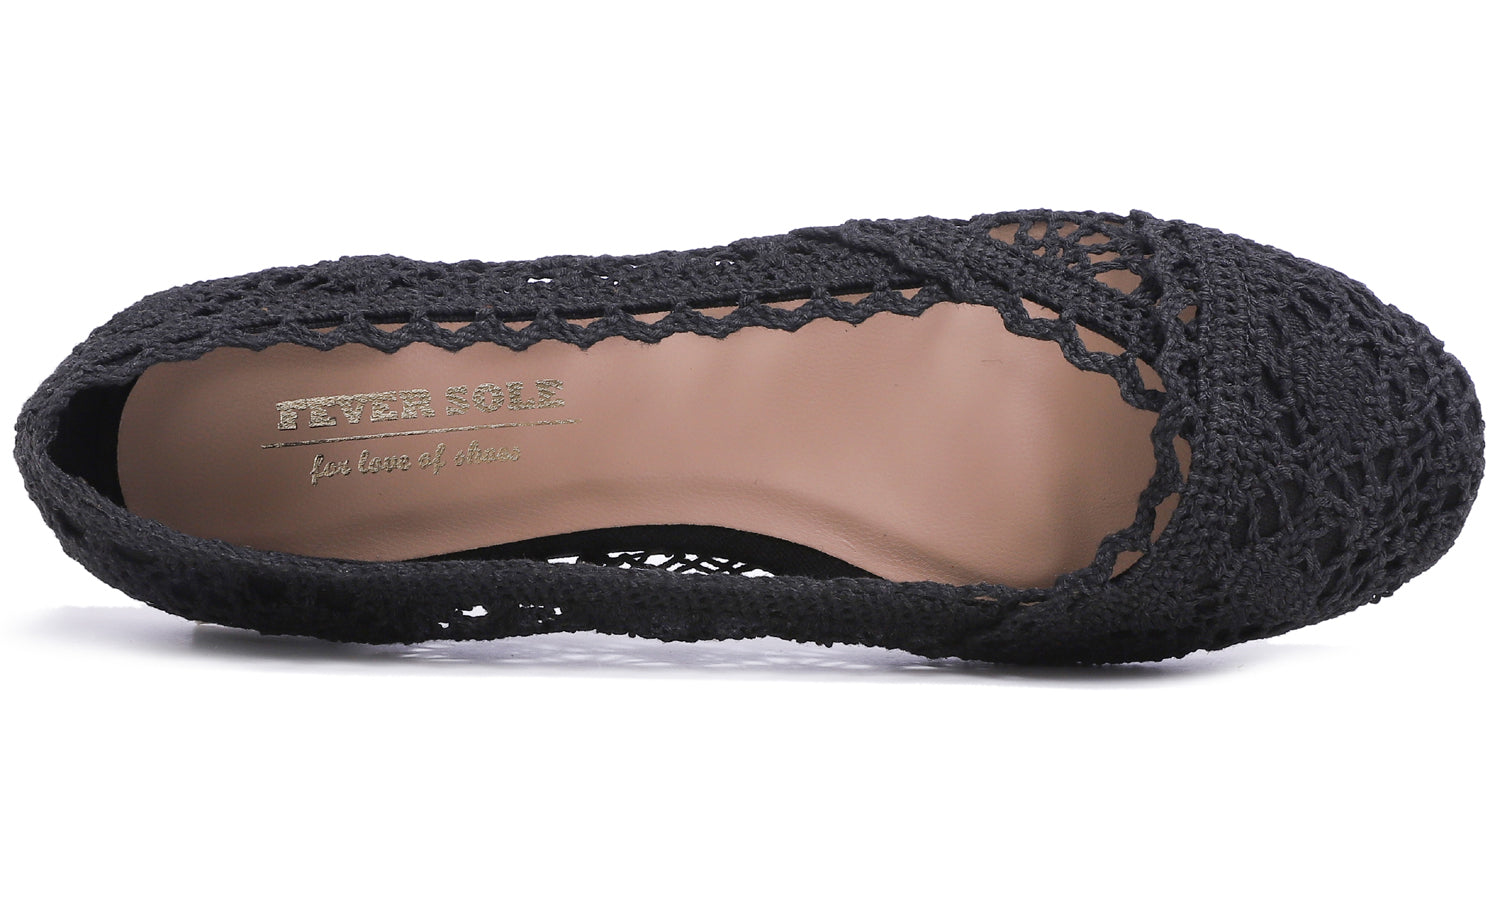 Feversole Round Toe Lace Ballet Crochet Flats Women's Comfy Breathable Shoes Black Knit Crochet